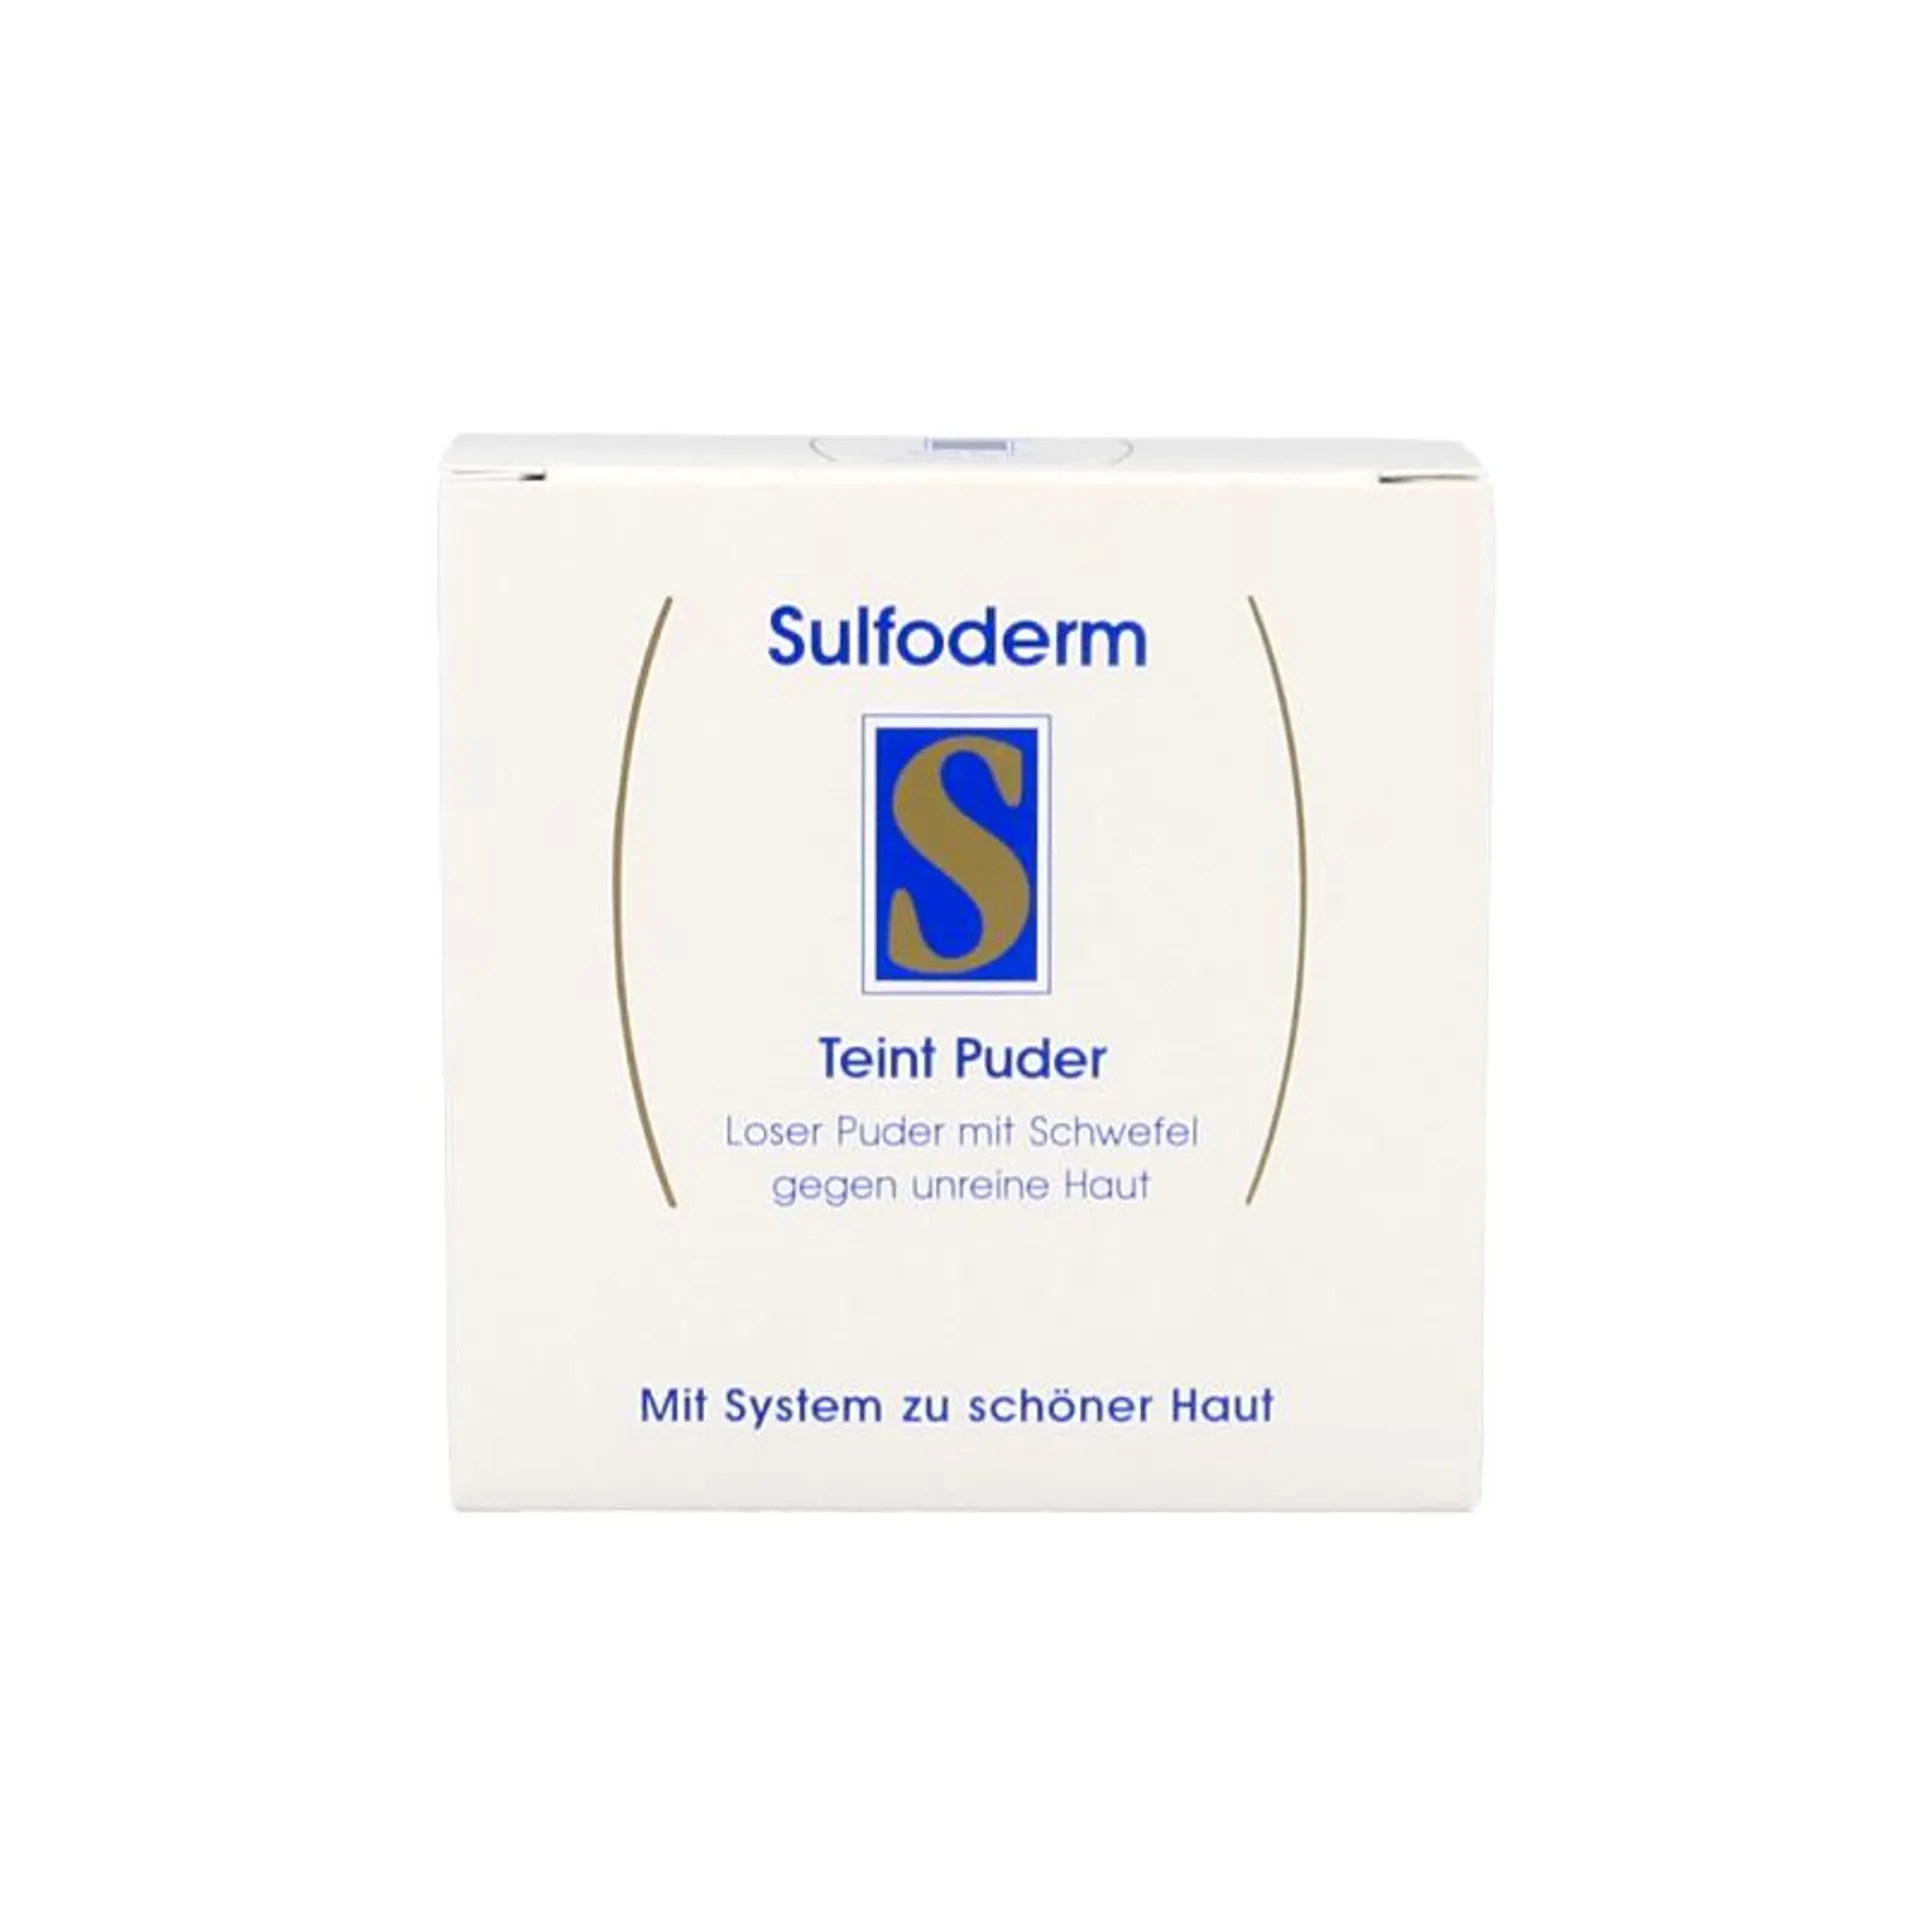 Sulfoderm S teint powder 20 gram